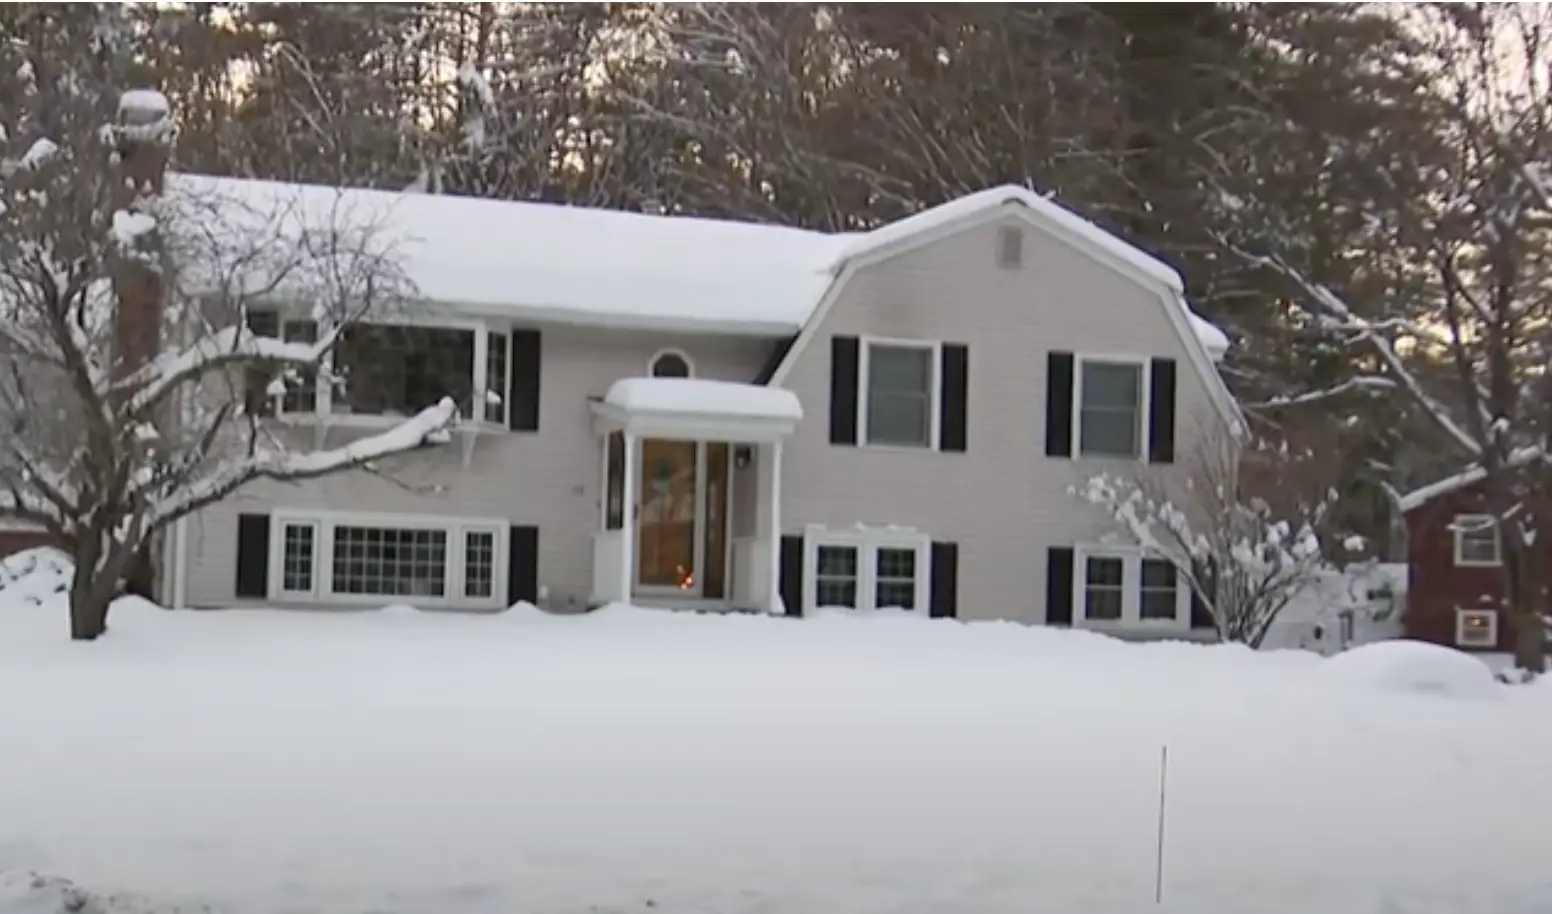 La maison de Roxanne Doucette, vue dans une vidéo datée du 7 janvier 2024 | Source : Youtube.com/cbsboston